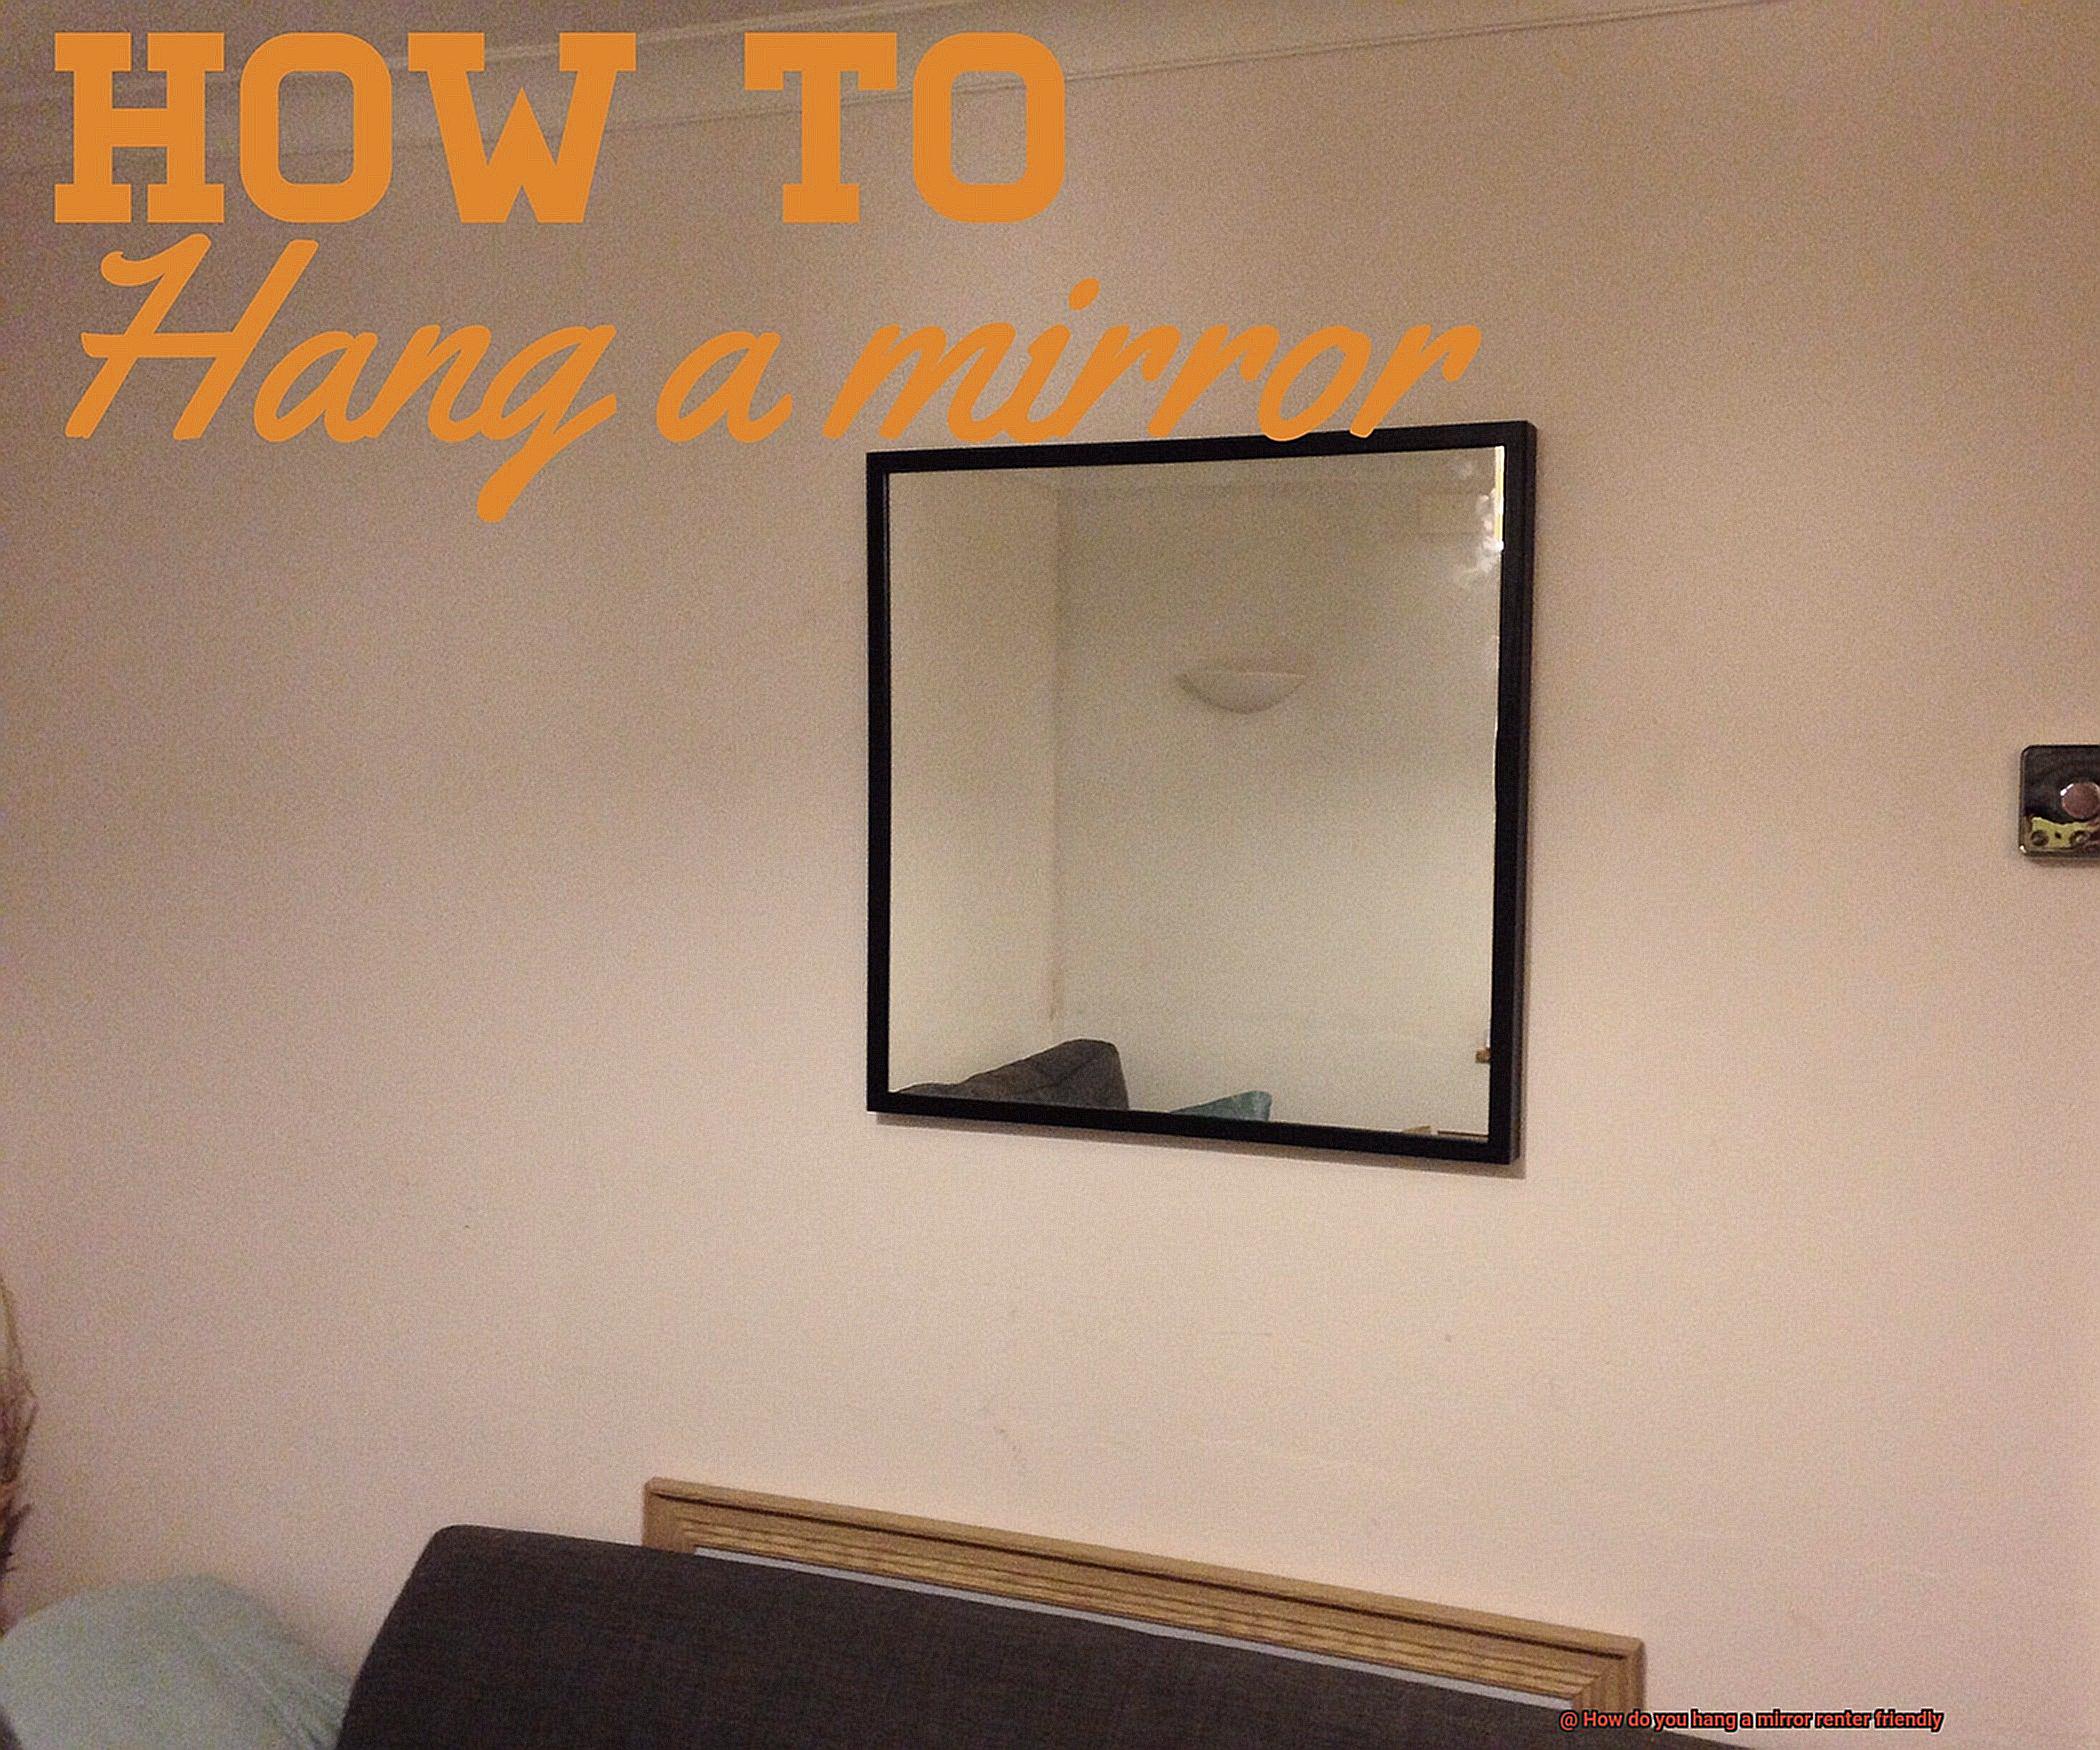 How do you hang a mirror renter friendly-5